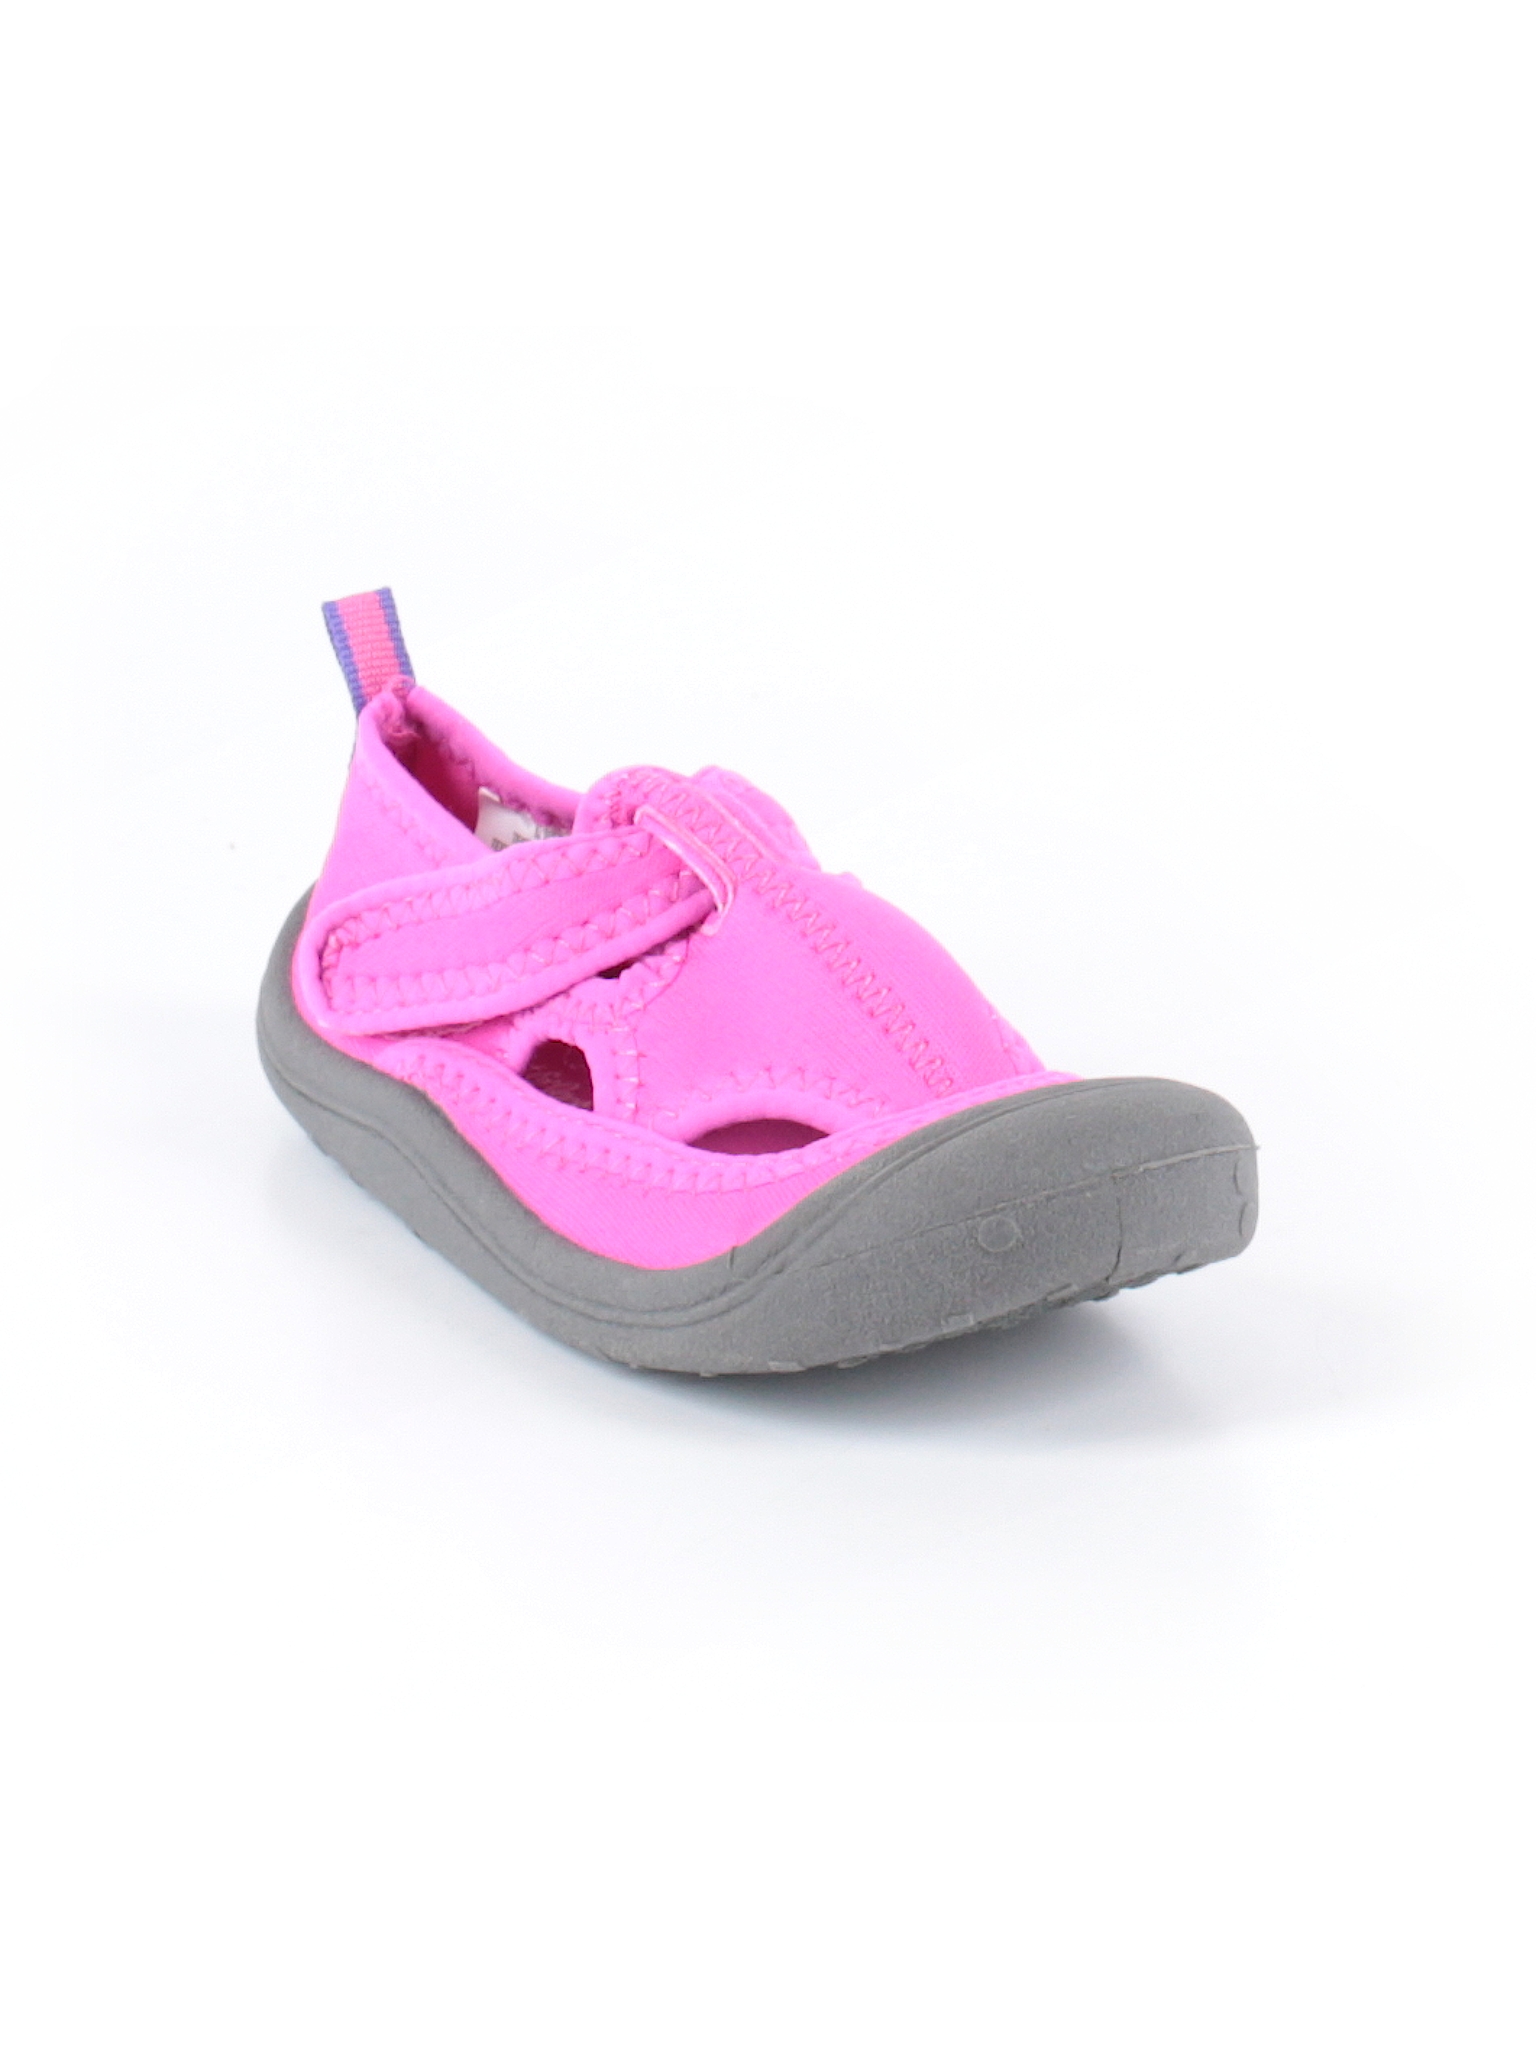 Toddler Girls' Shoes Slip on Cat & Jack Kelsey Mary Jane Pink L 9/10 for sale online 